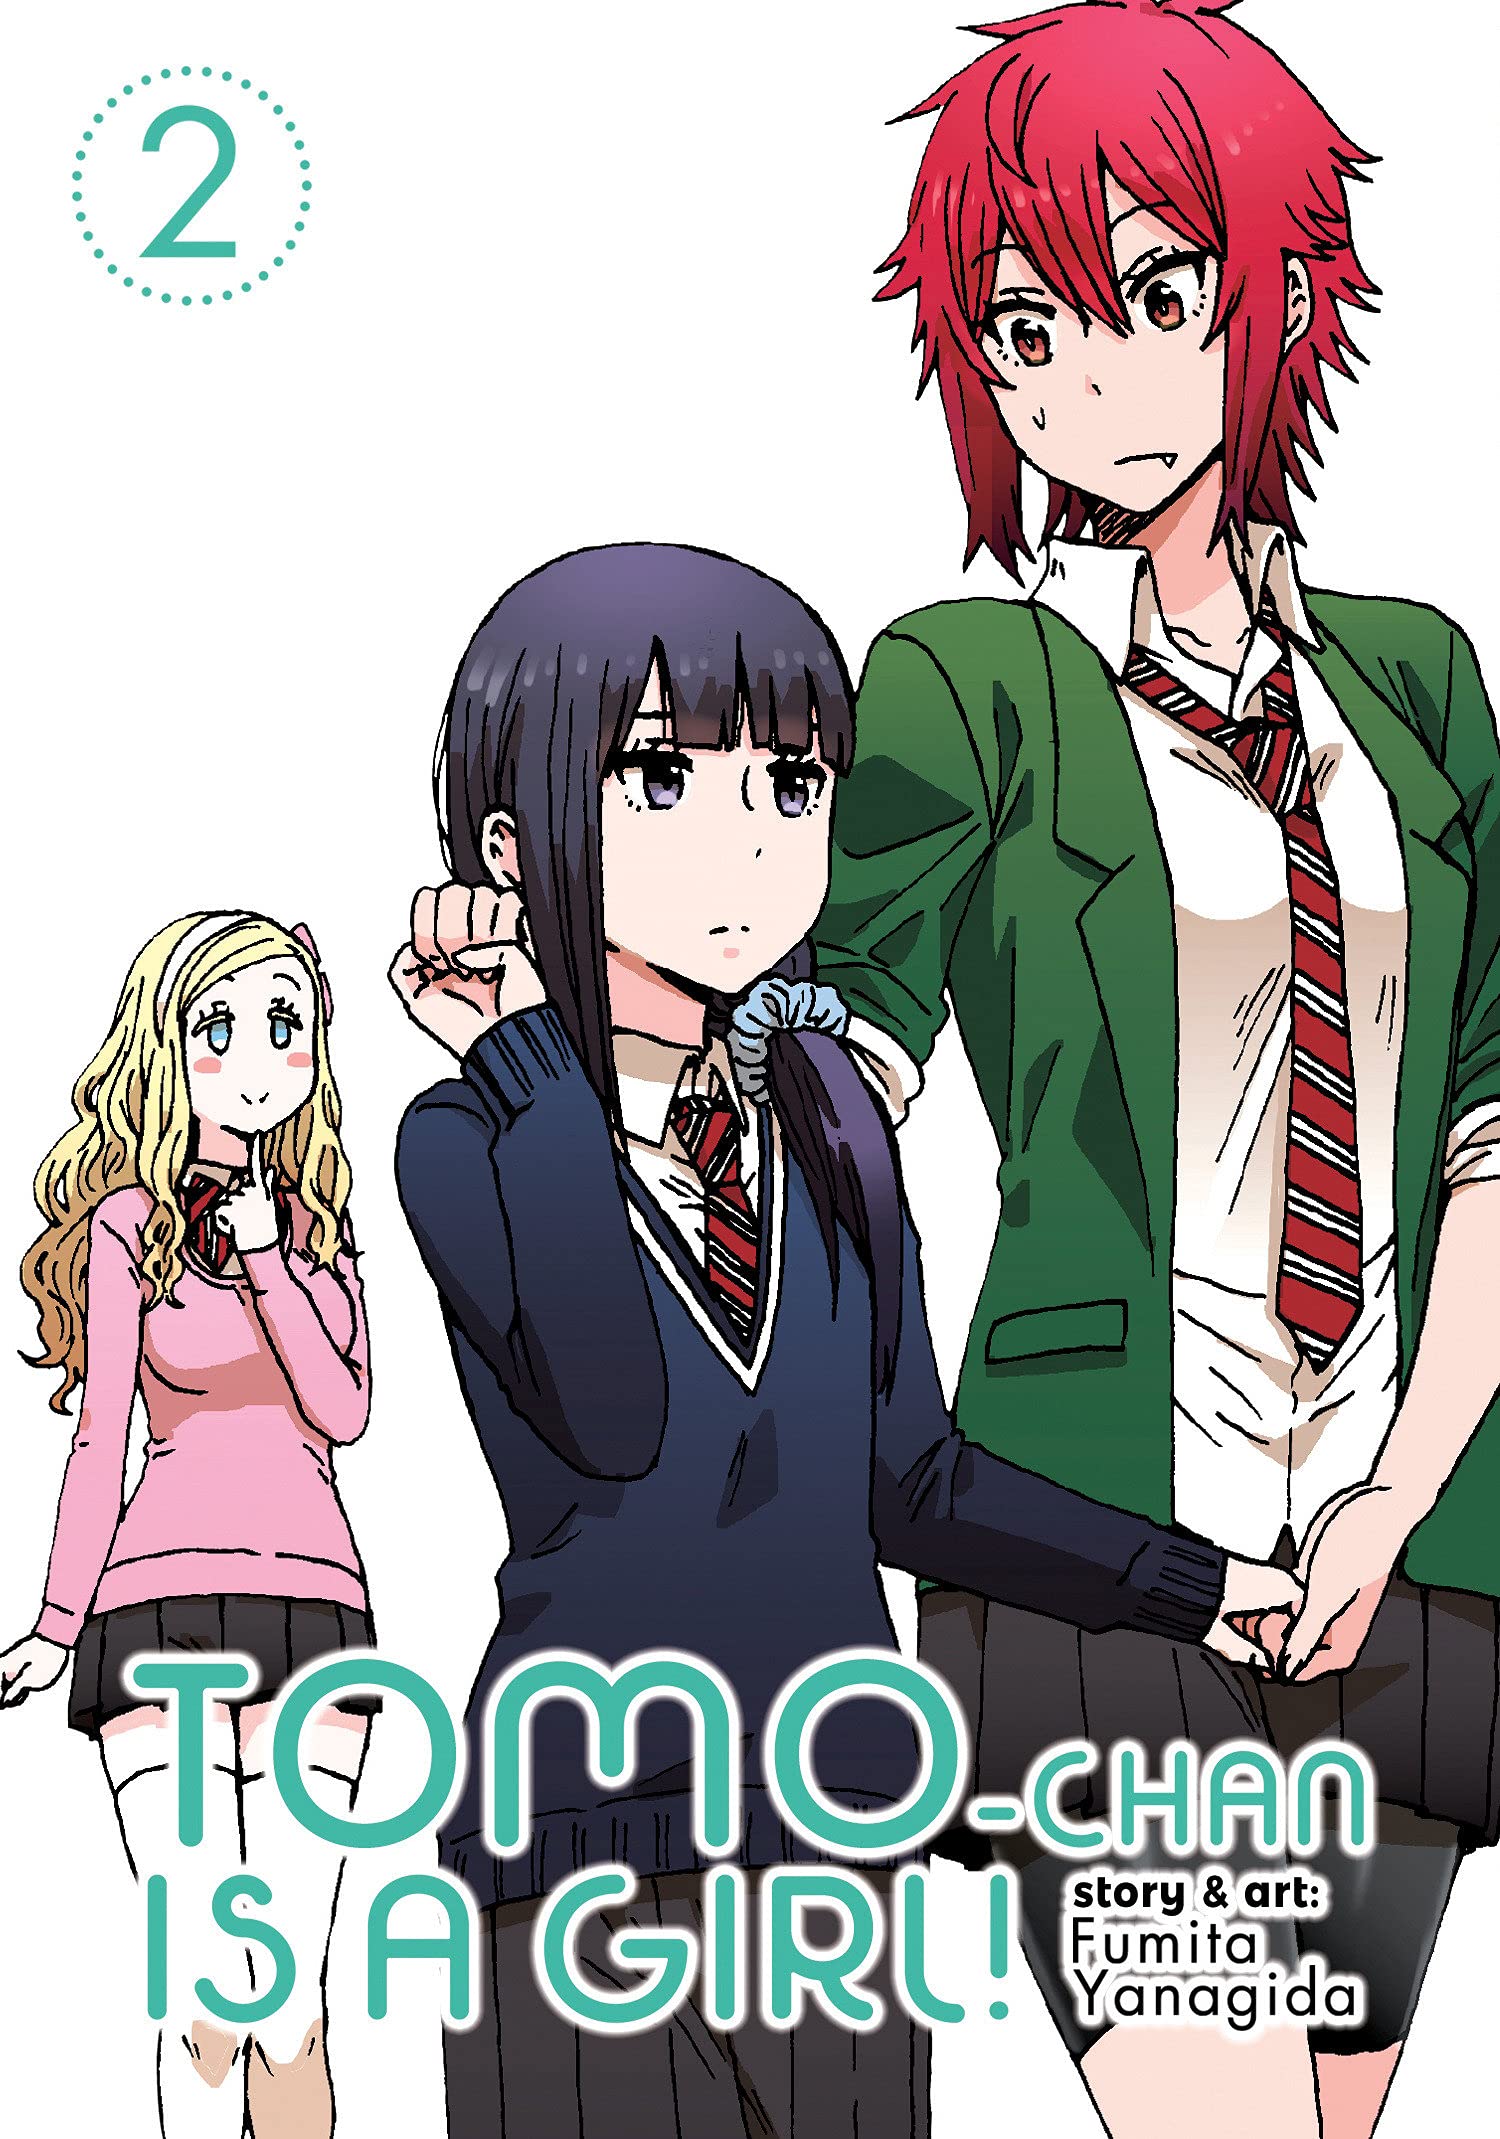 Tomo-chan is a Girl!' Manga Getting Anime Adaptation